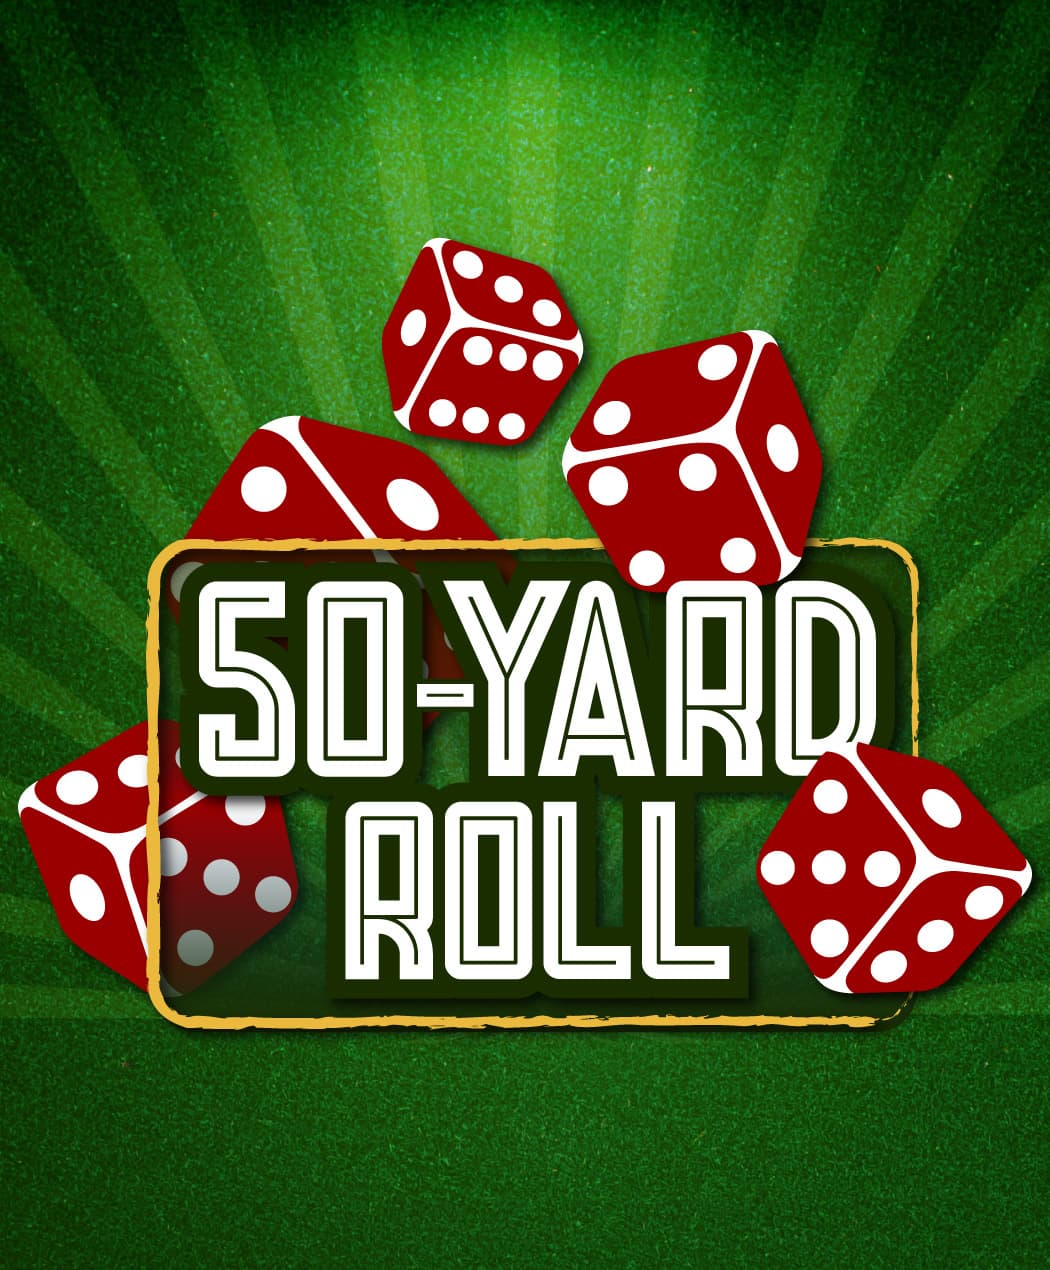 50-Yard Roll